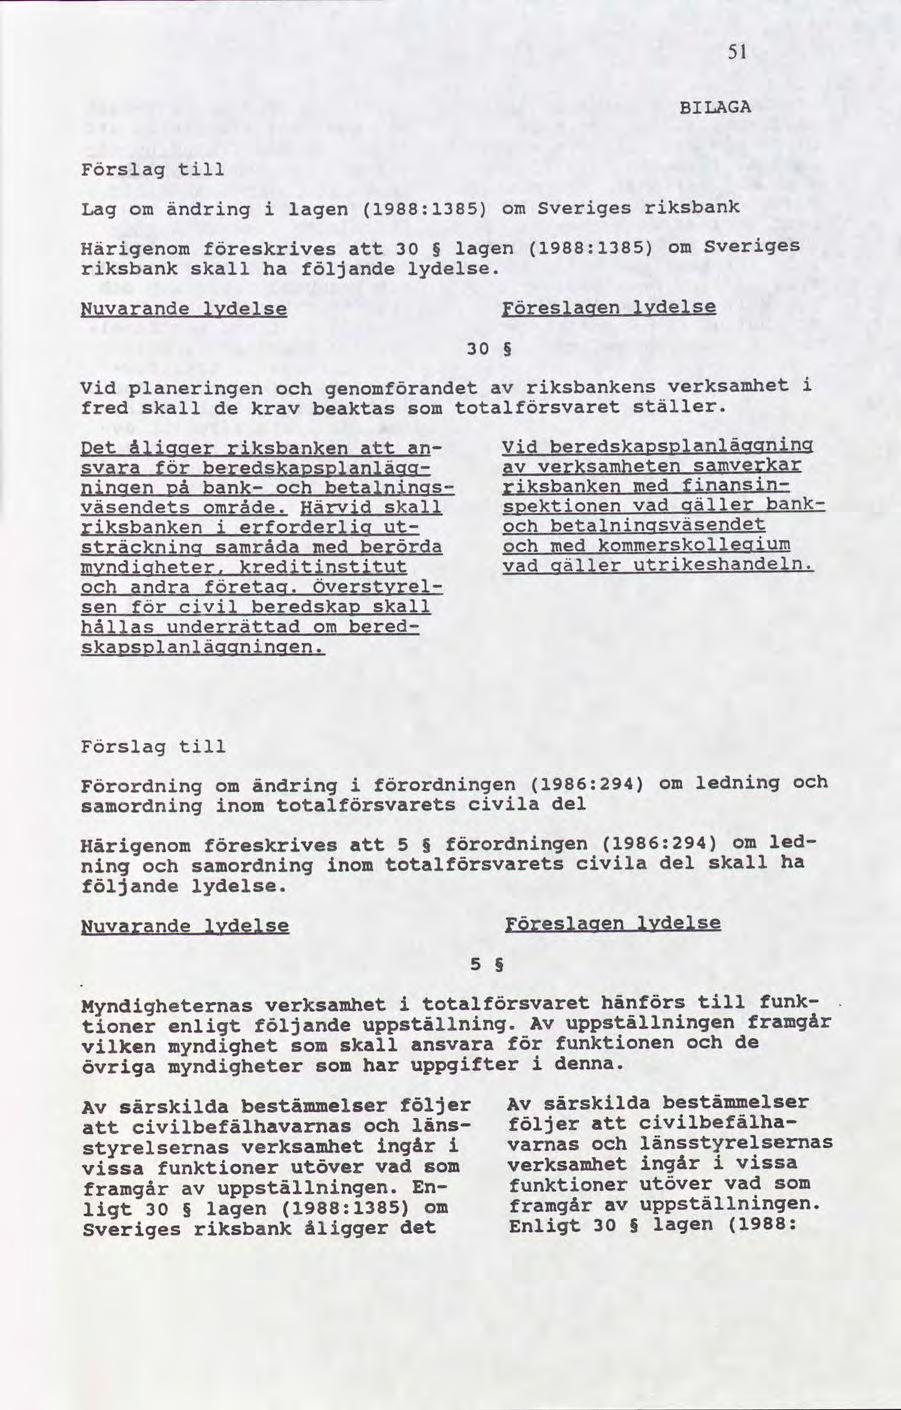 51 BILAGA Förslag Lag om ändrng lagen 1988:1385 om sverges rksbank Härgenom eskrves 30 lagen 1988:1385 om rksbank skall ha följande lydelse.